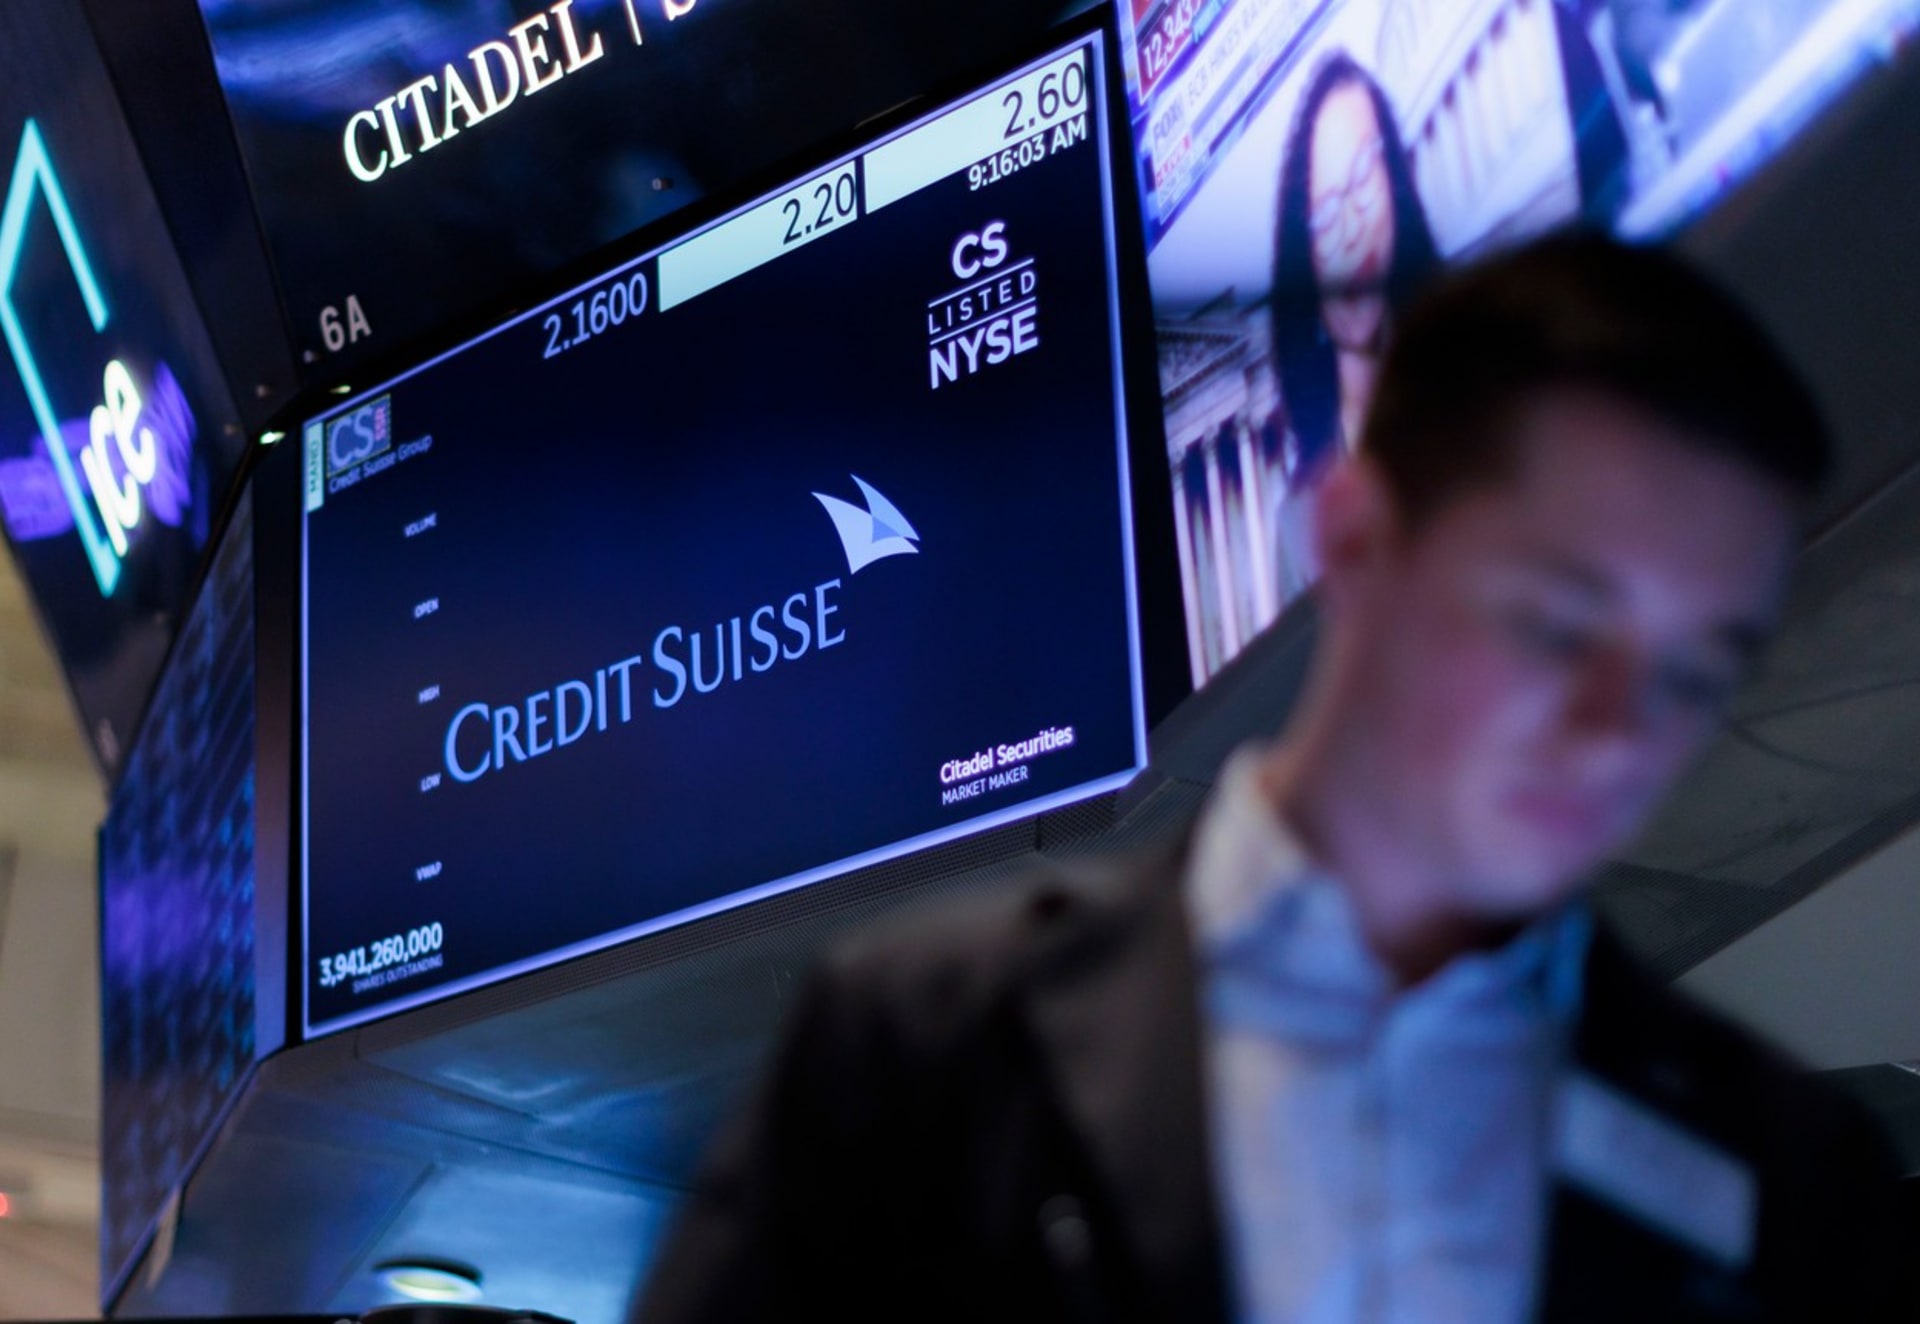 Pokud by padla velká banka typu švýcarské Credit Suisse, tak by následky velmi výrazně pocítili i lidé v České republice.